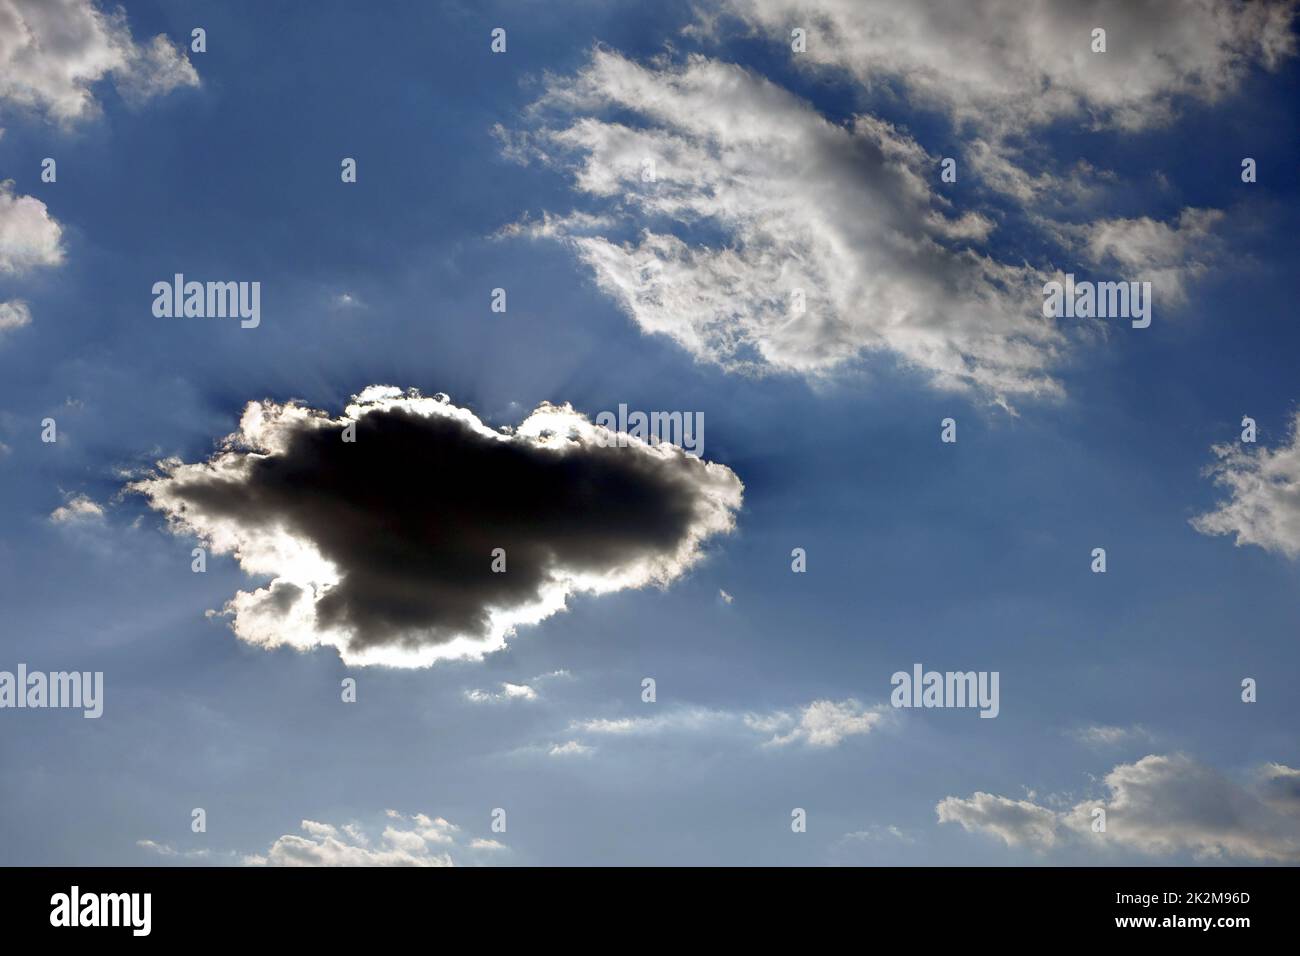 Schwarze Wolke bildet sich am blauen Himmel, dunkle Wolke bildet sich in verschiedenen und interessanten Formen Stockfoto